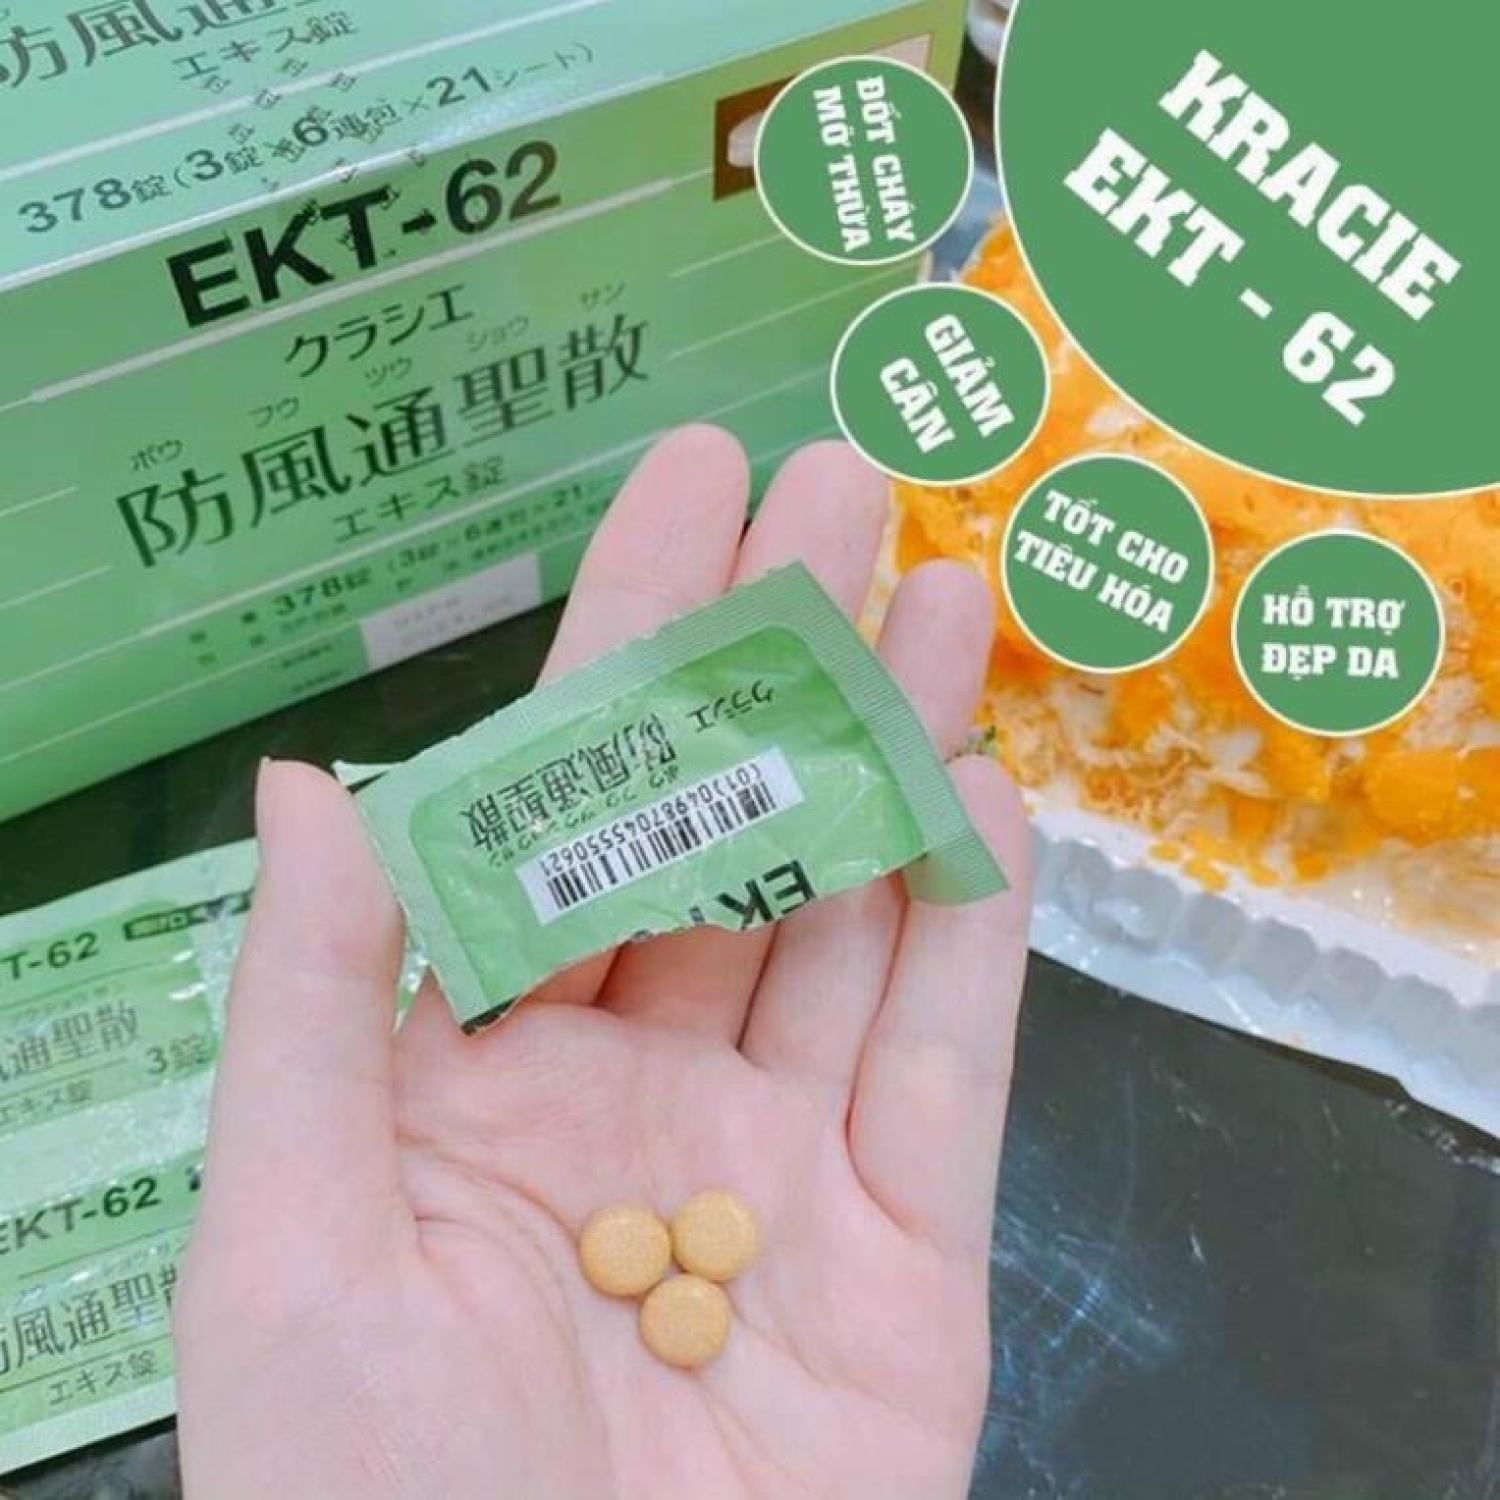 Viên uống giảm cân Kracie EKT-62 Nhật Bản